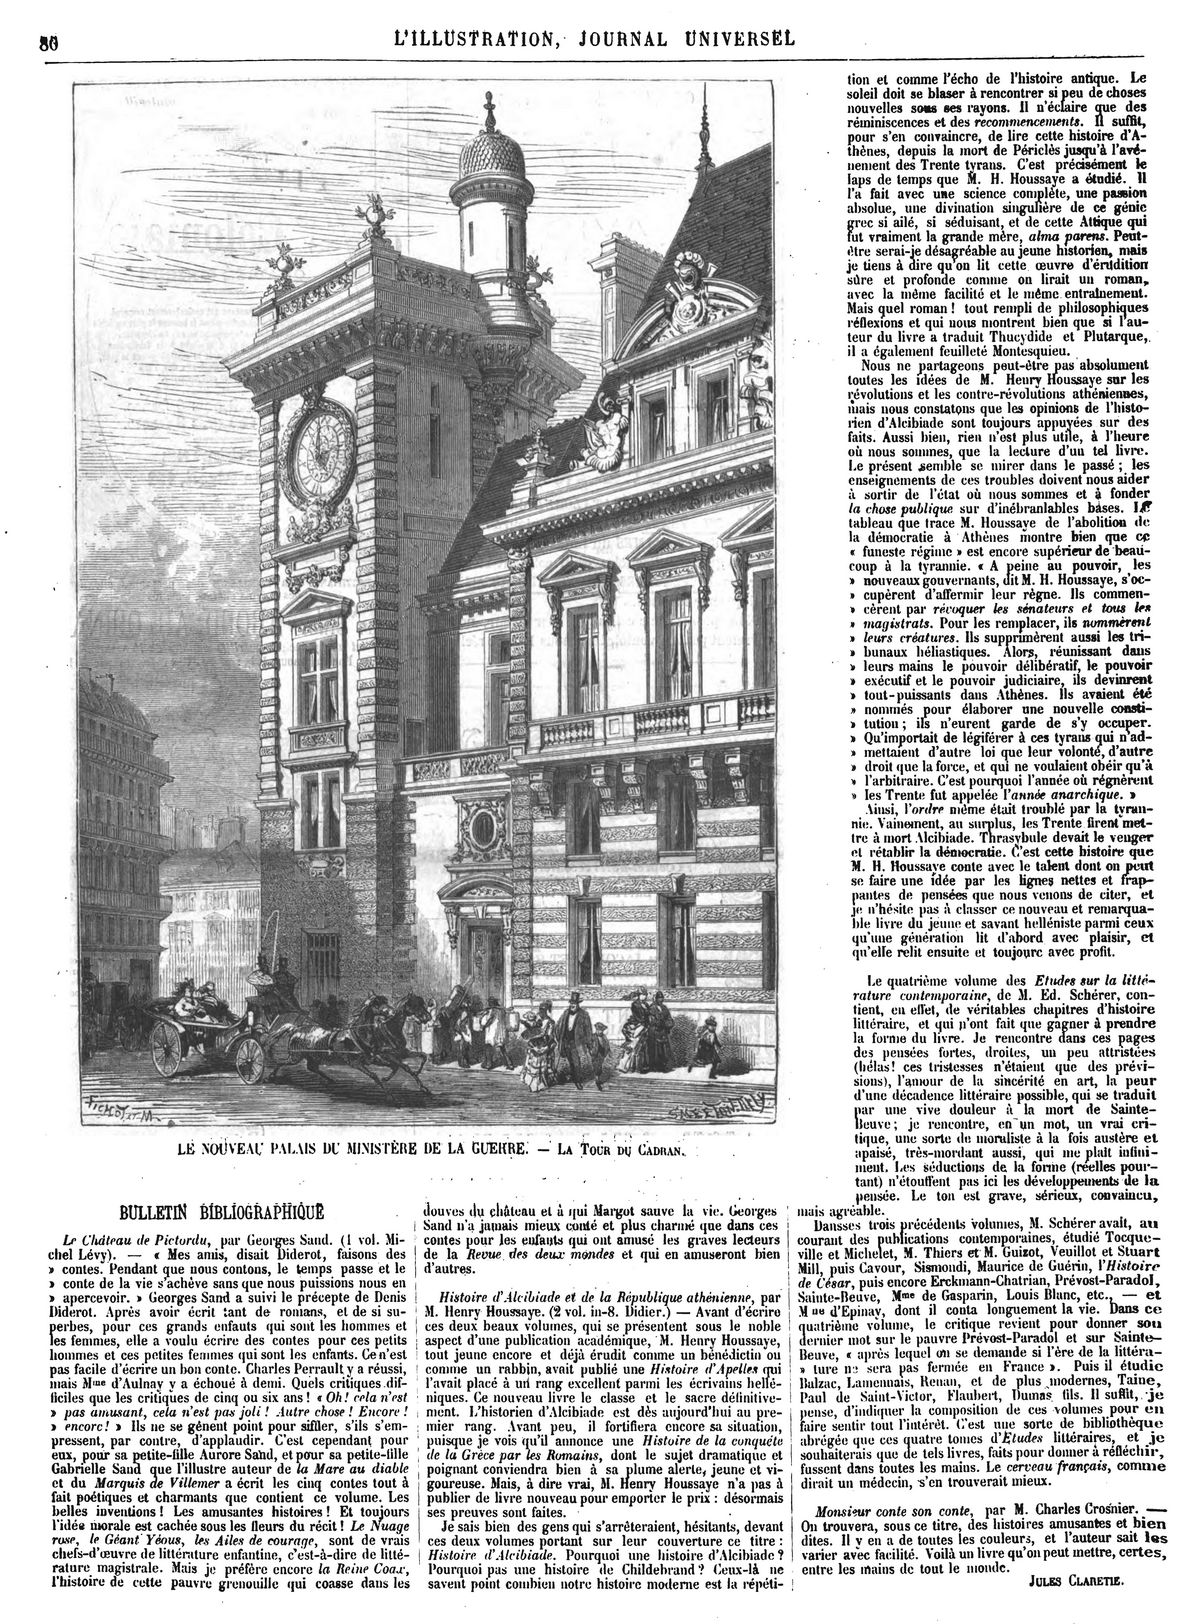 LE NOUVEAU PALAIS DU MINISTÈRE DE LA GUERRE - La Tour du cadran 1874